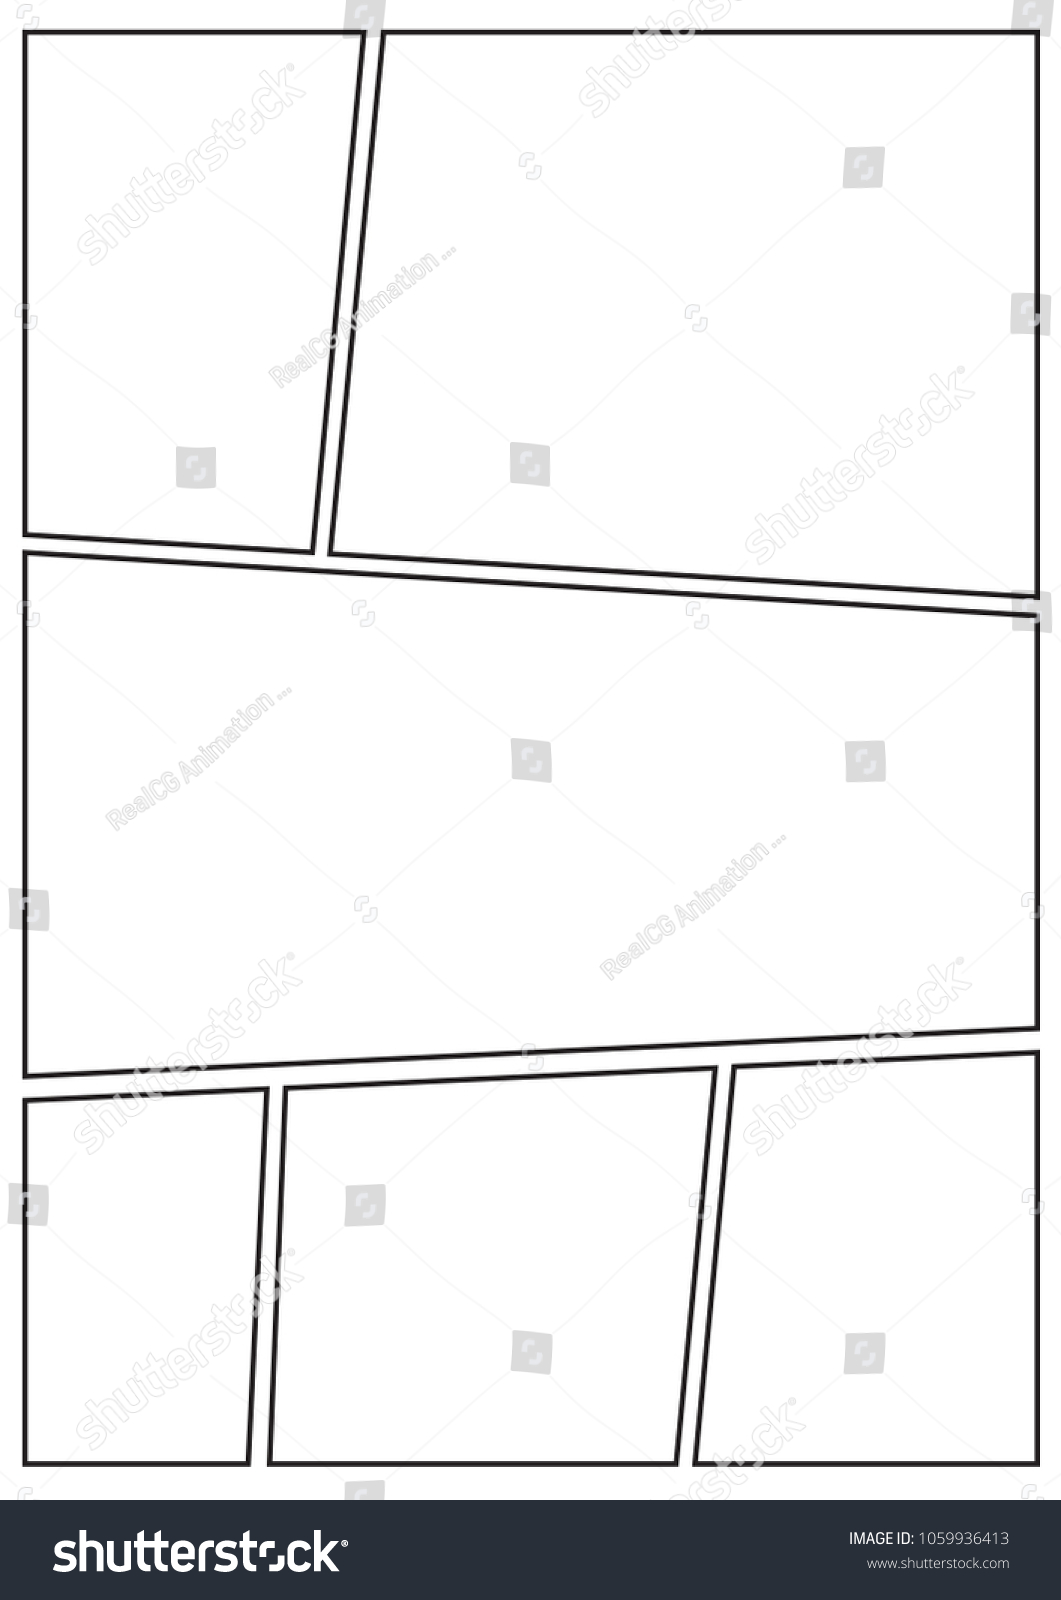 Manga Storyboard Layout Vorlage Fur Schnell Erstellen Stock Vektorgrafik Lizenzfrei